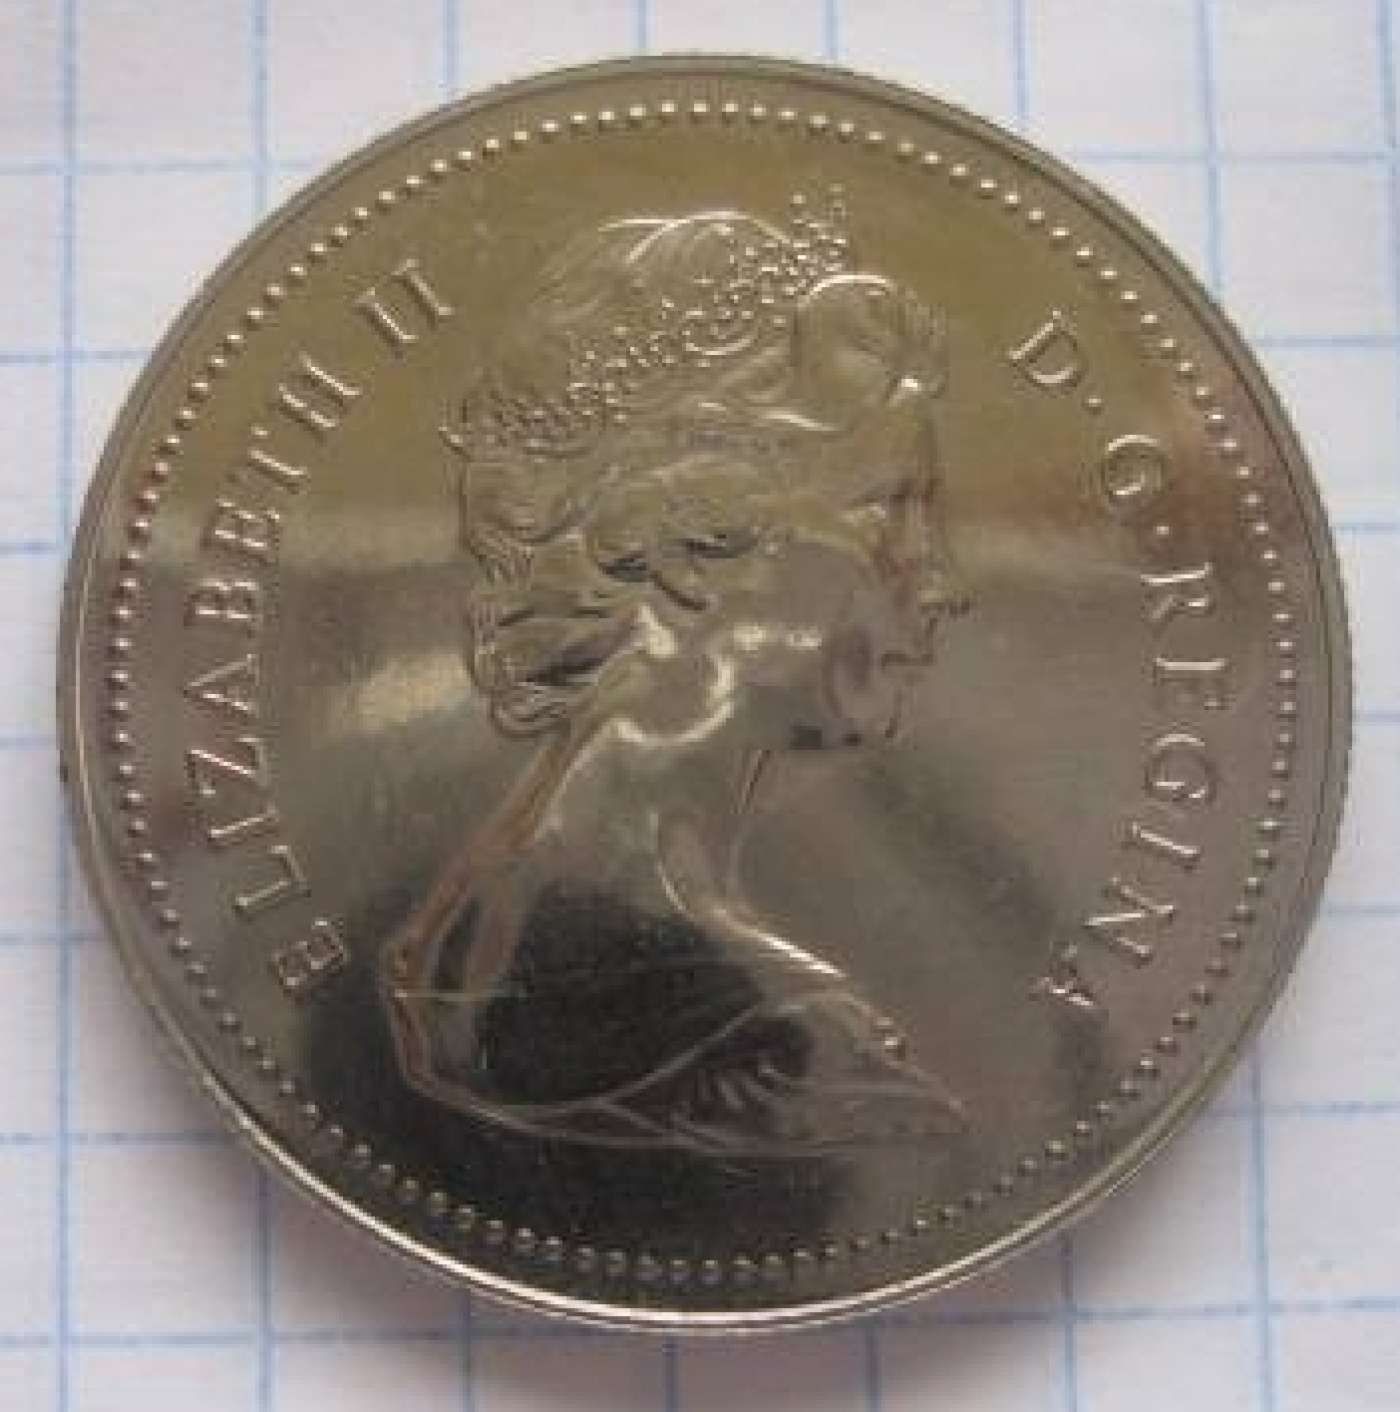 1 Dollar 1979, Elizabeth II (1953-present) - Canada - Coin - 341251400 x 1412